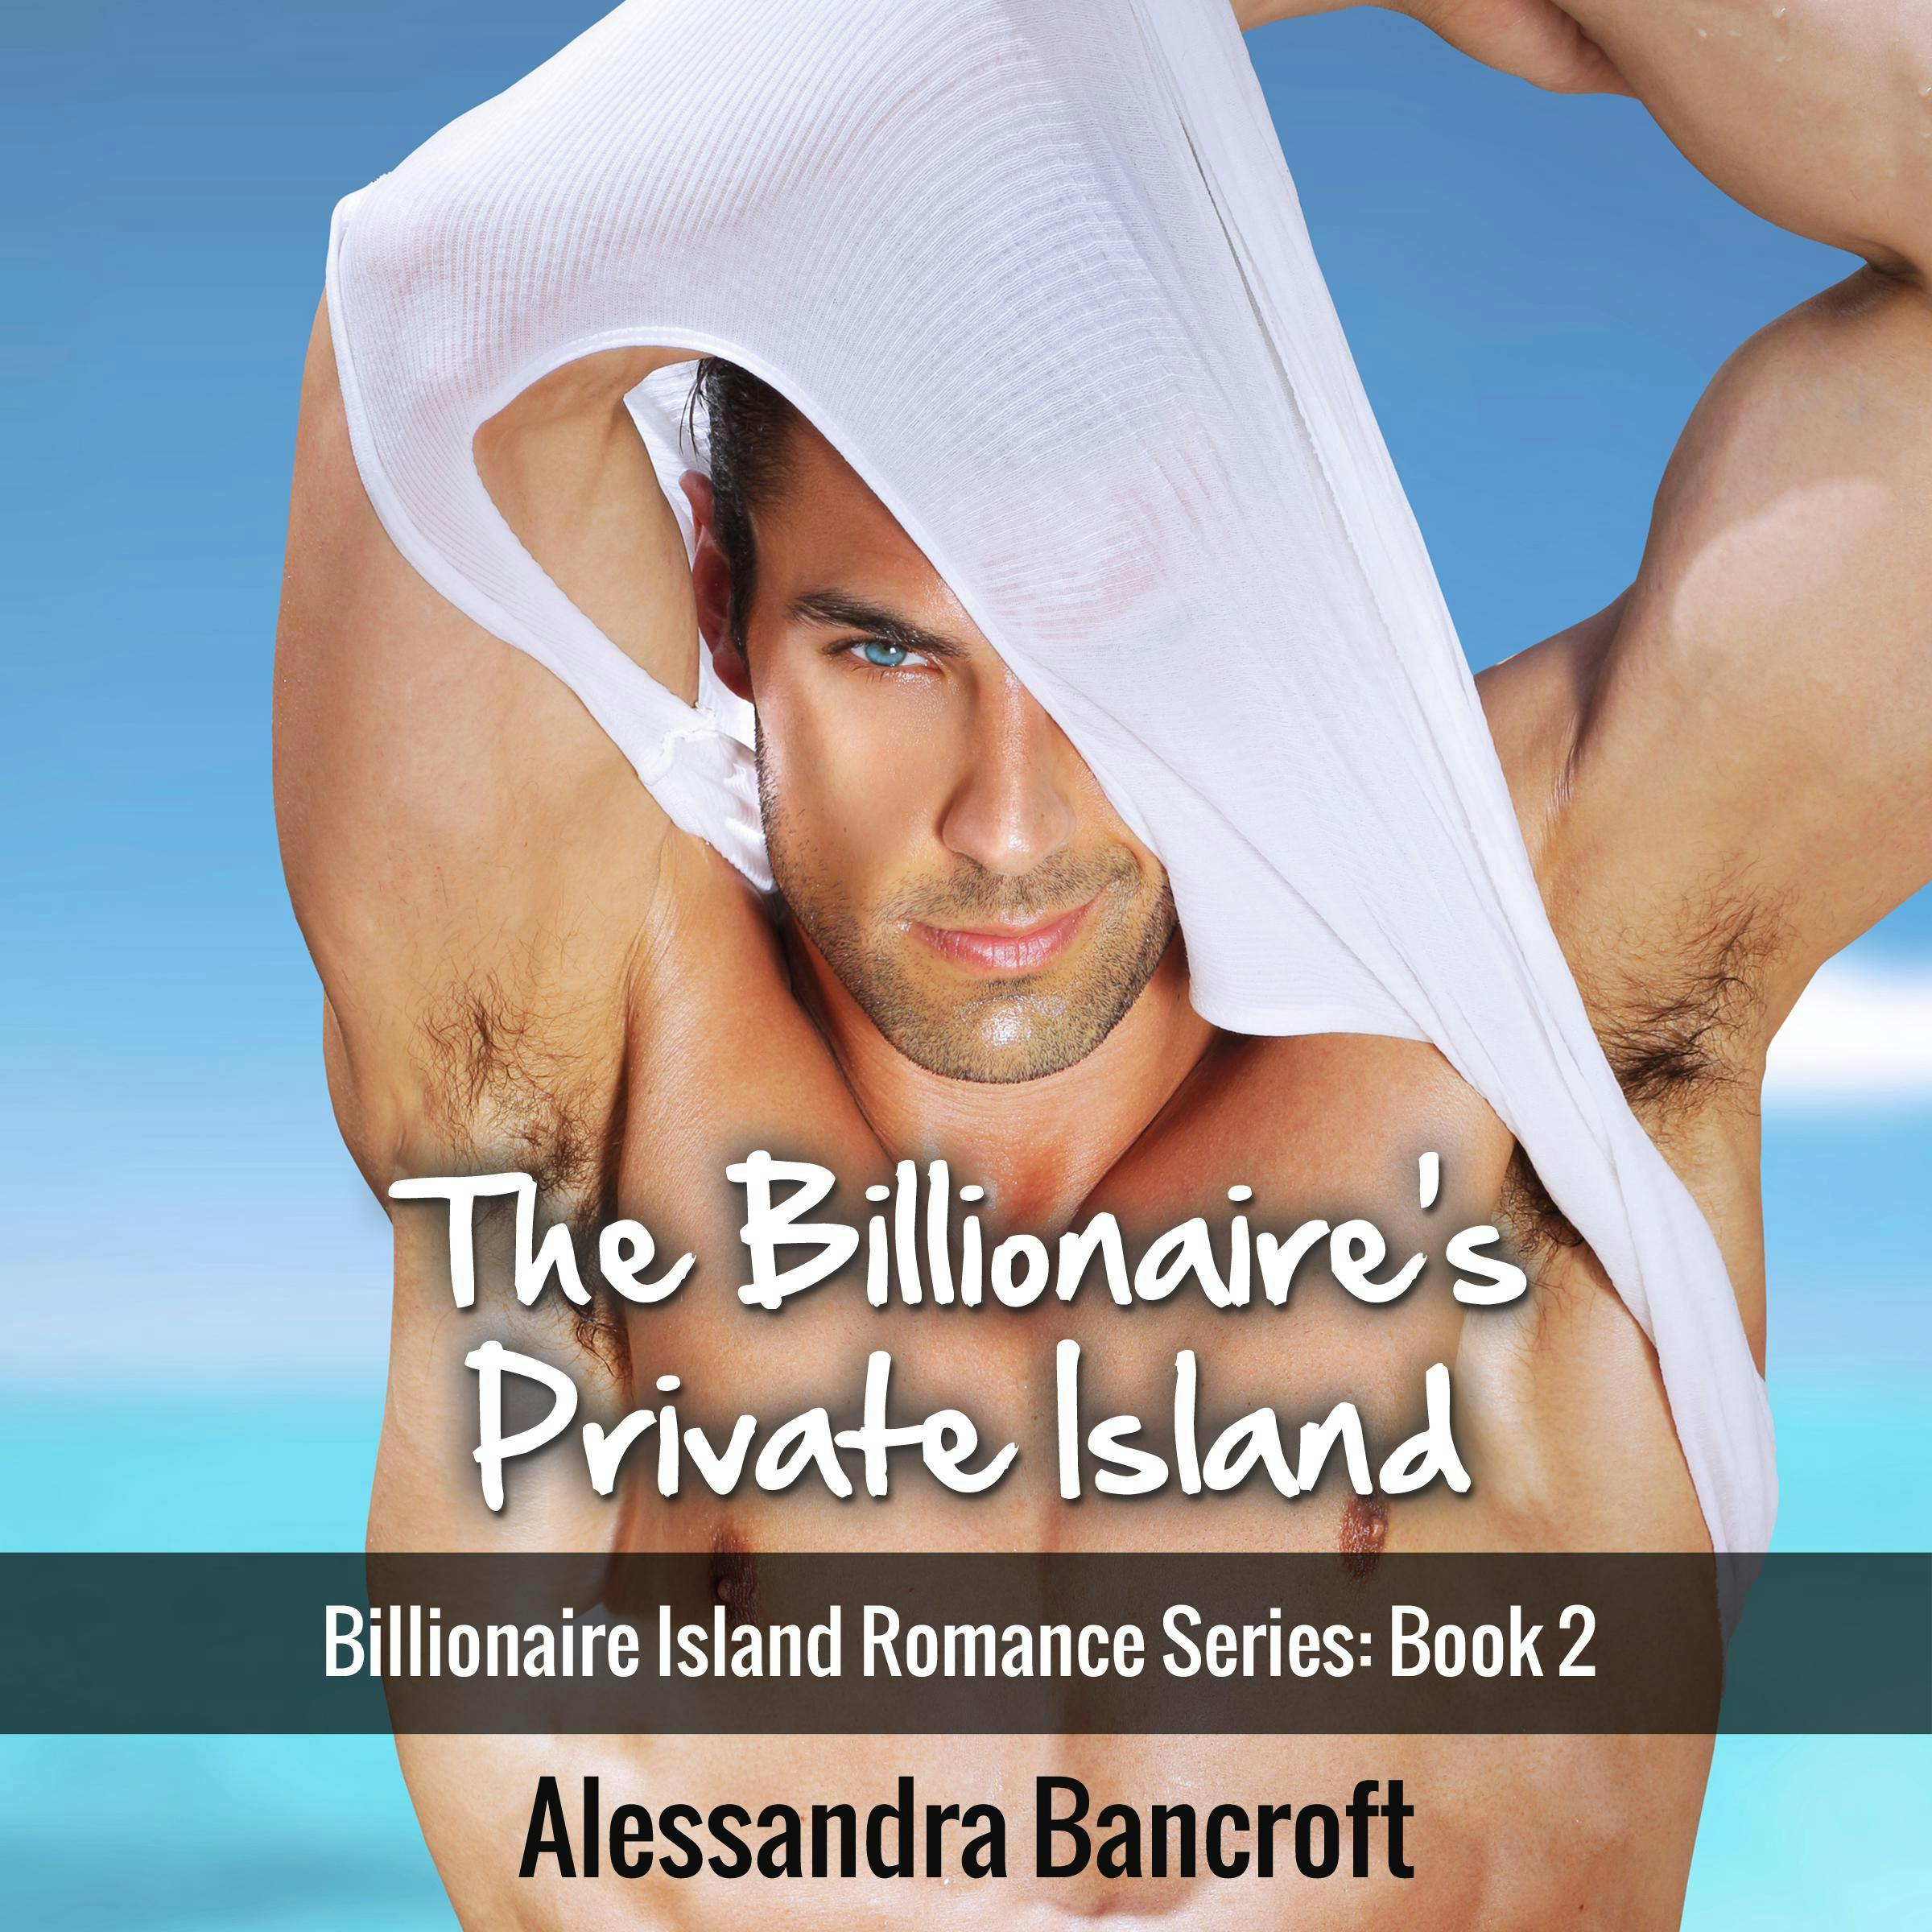 The Billionaire's Private Island: Billionaire Island Romance Series: Book 2 - Alessandra Bancroft